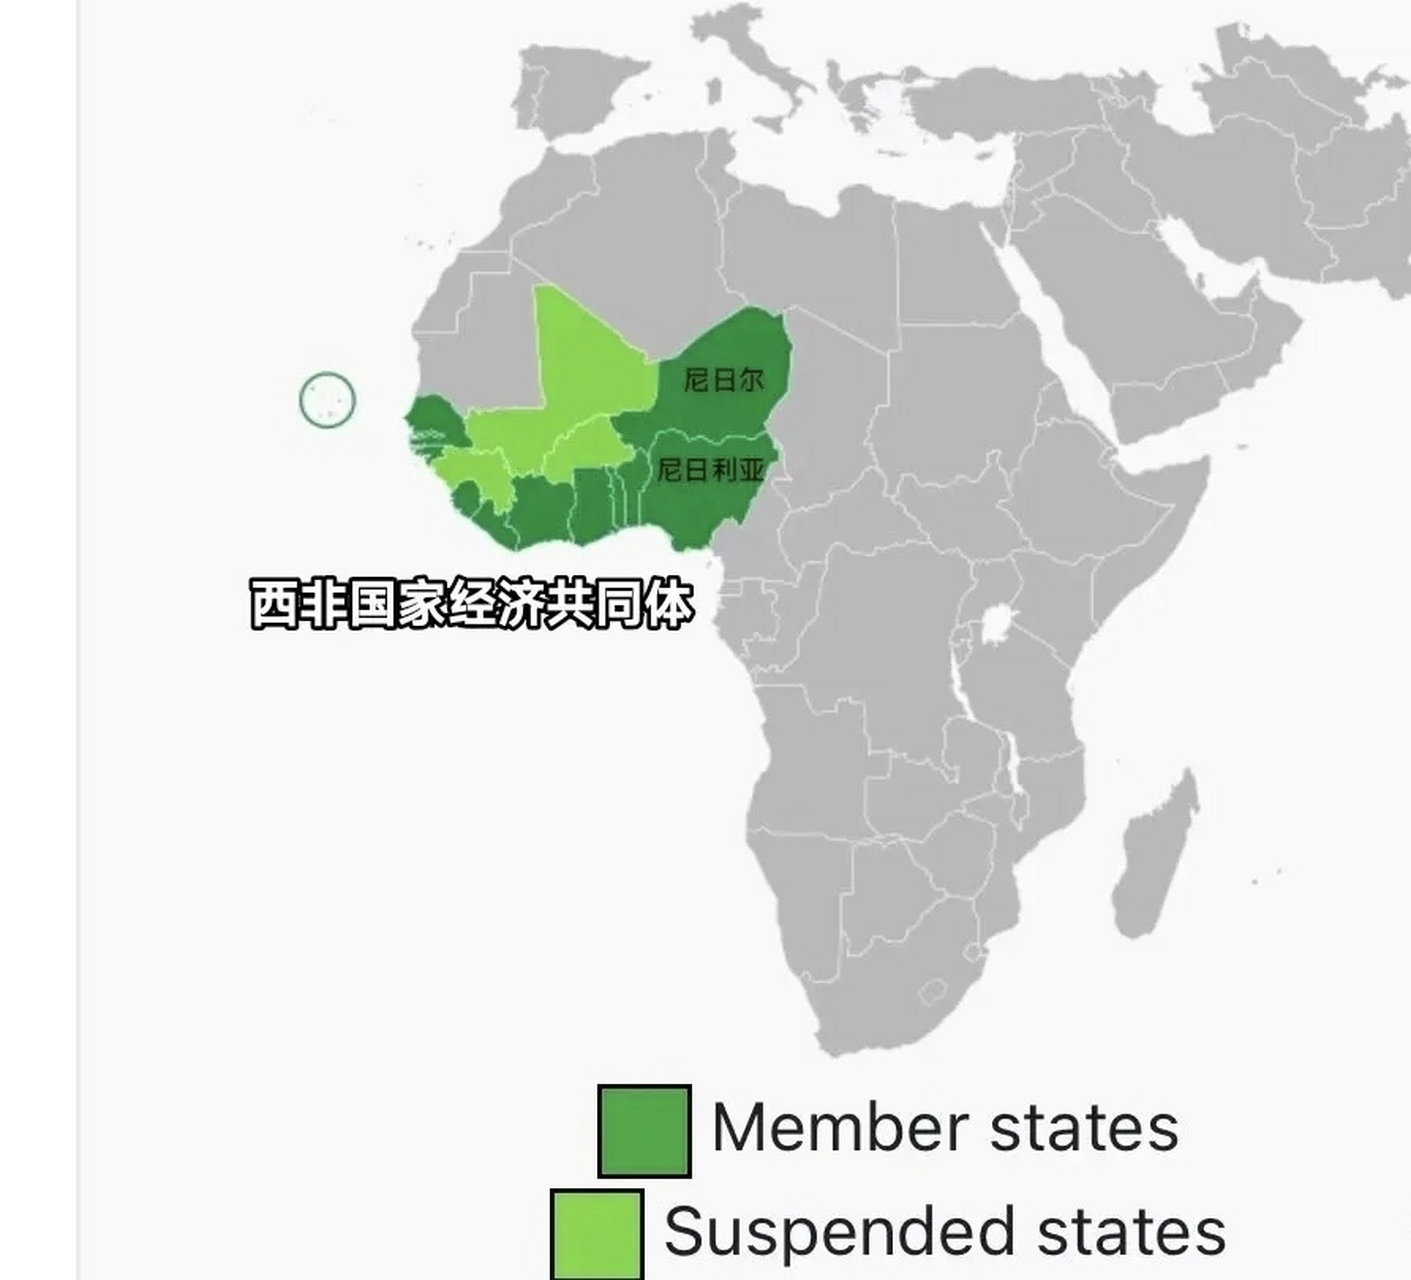 有一个崛起中的大国,就是尼日利亚,以2亿多的人口傲视非洲,综合实力